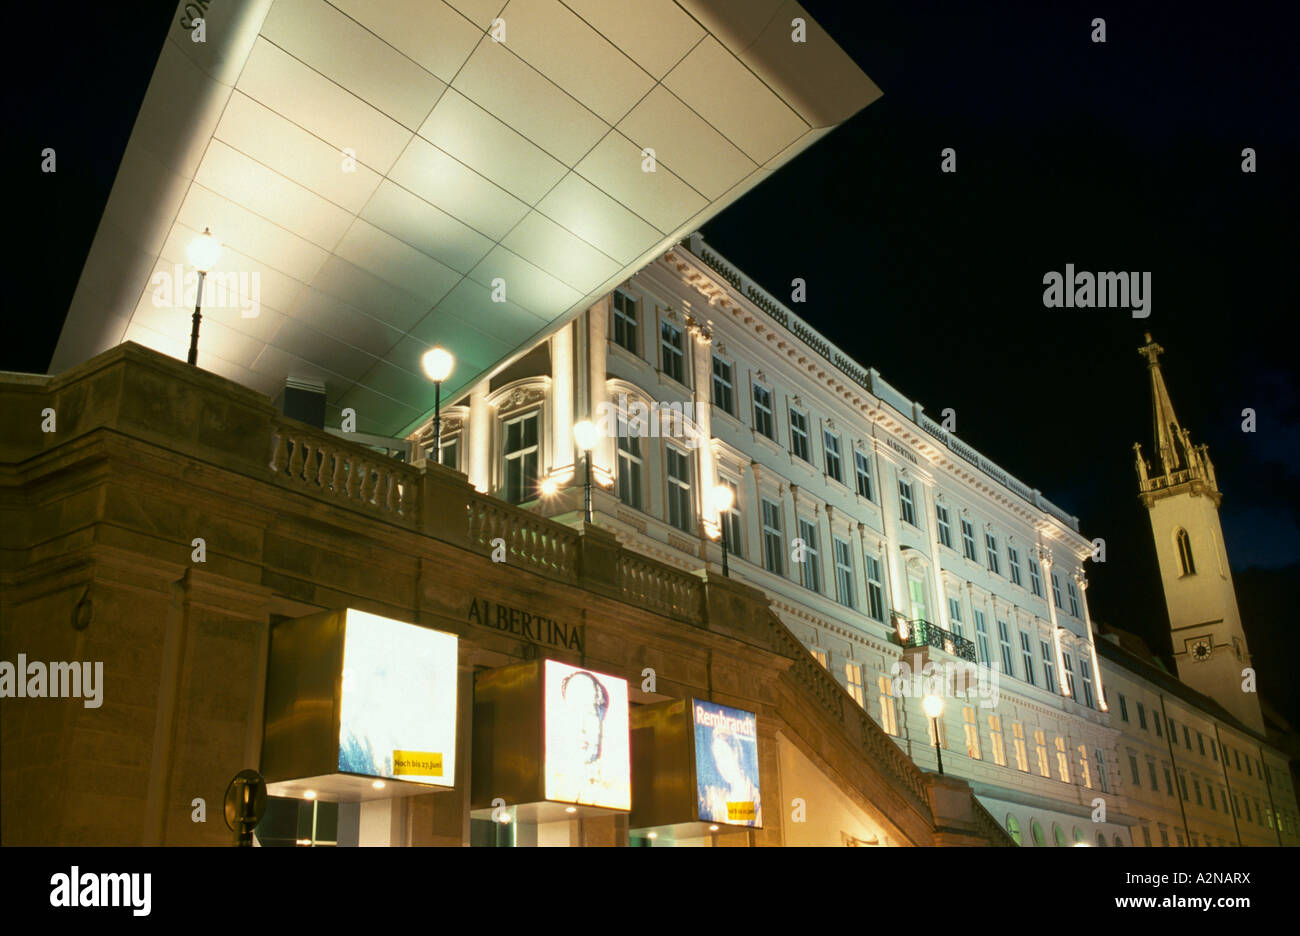 Basso angolo di visione di un museo Albertina, Innere Stadt, Vienna, Austria Foto Stock